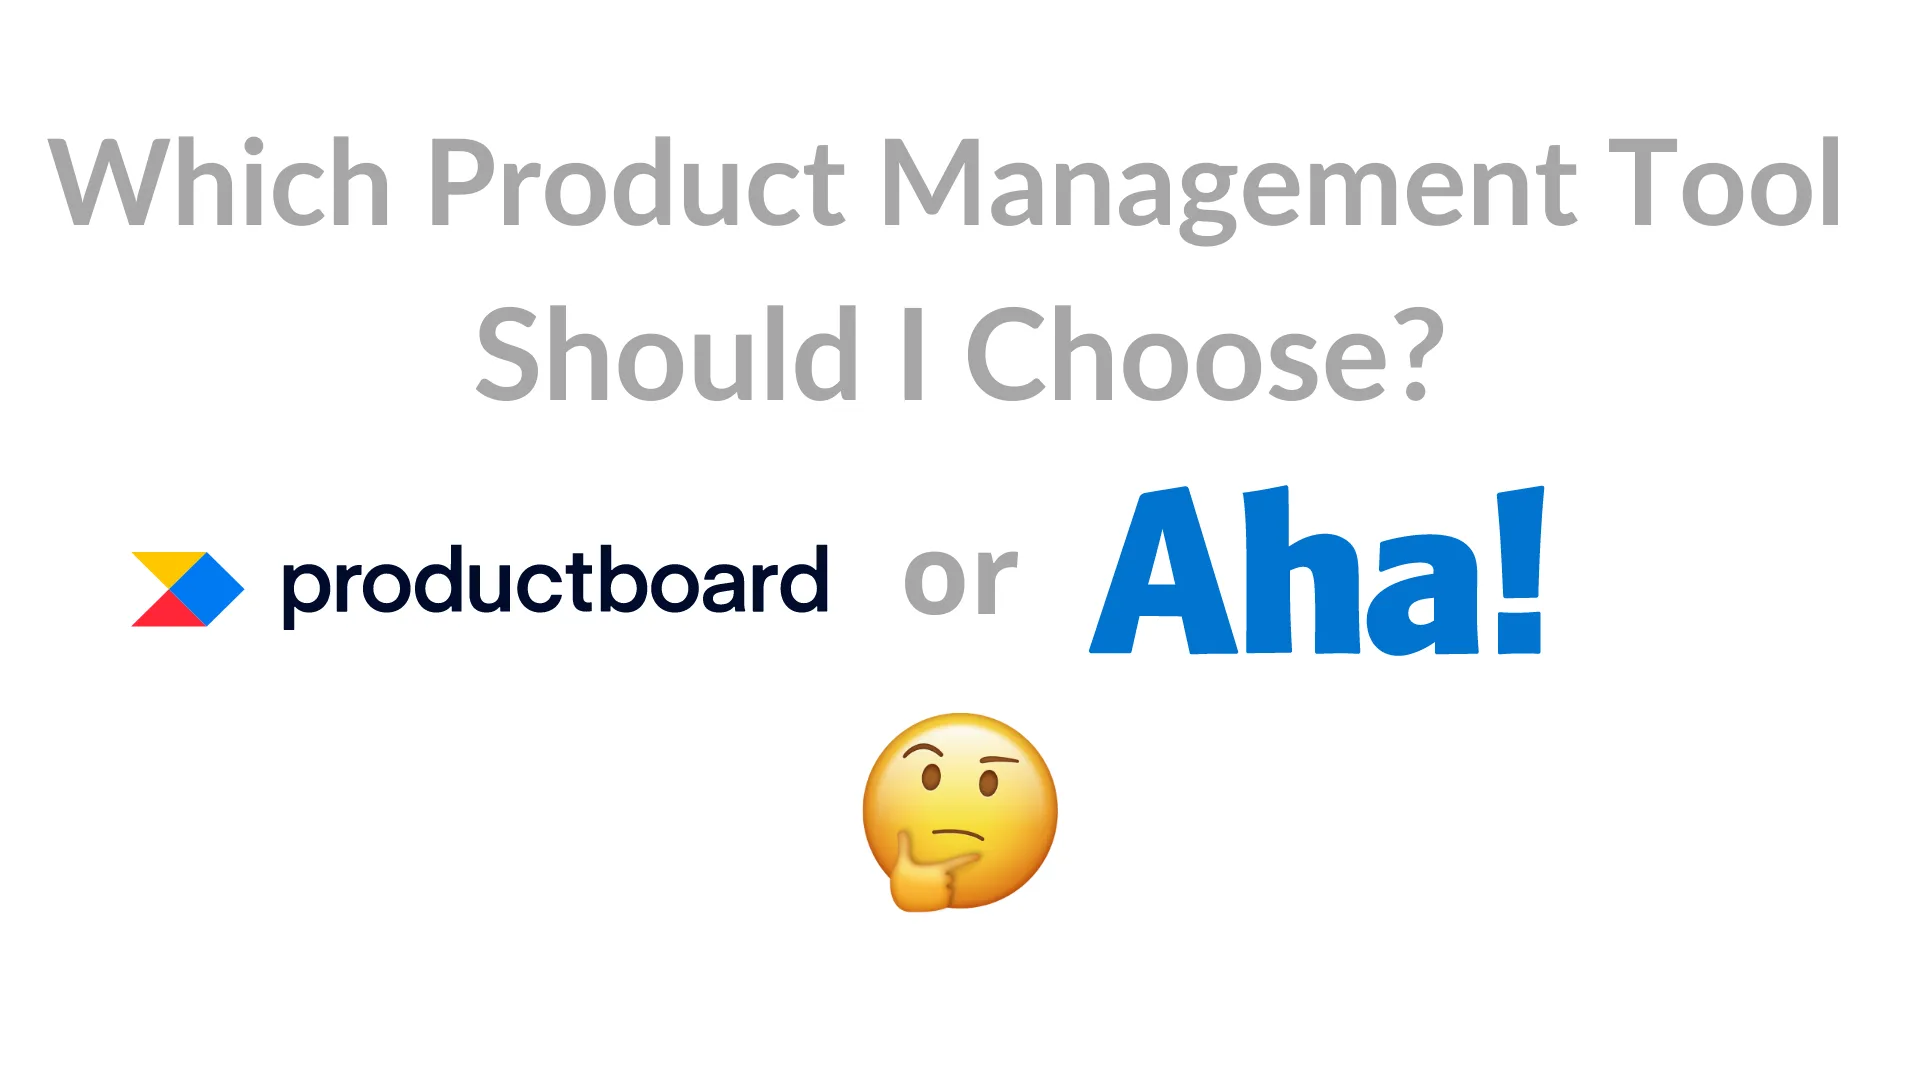 aha vs productboard image